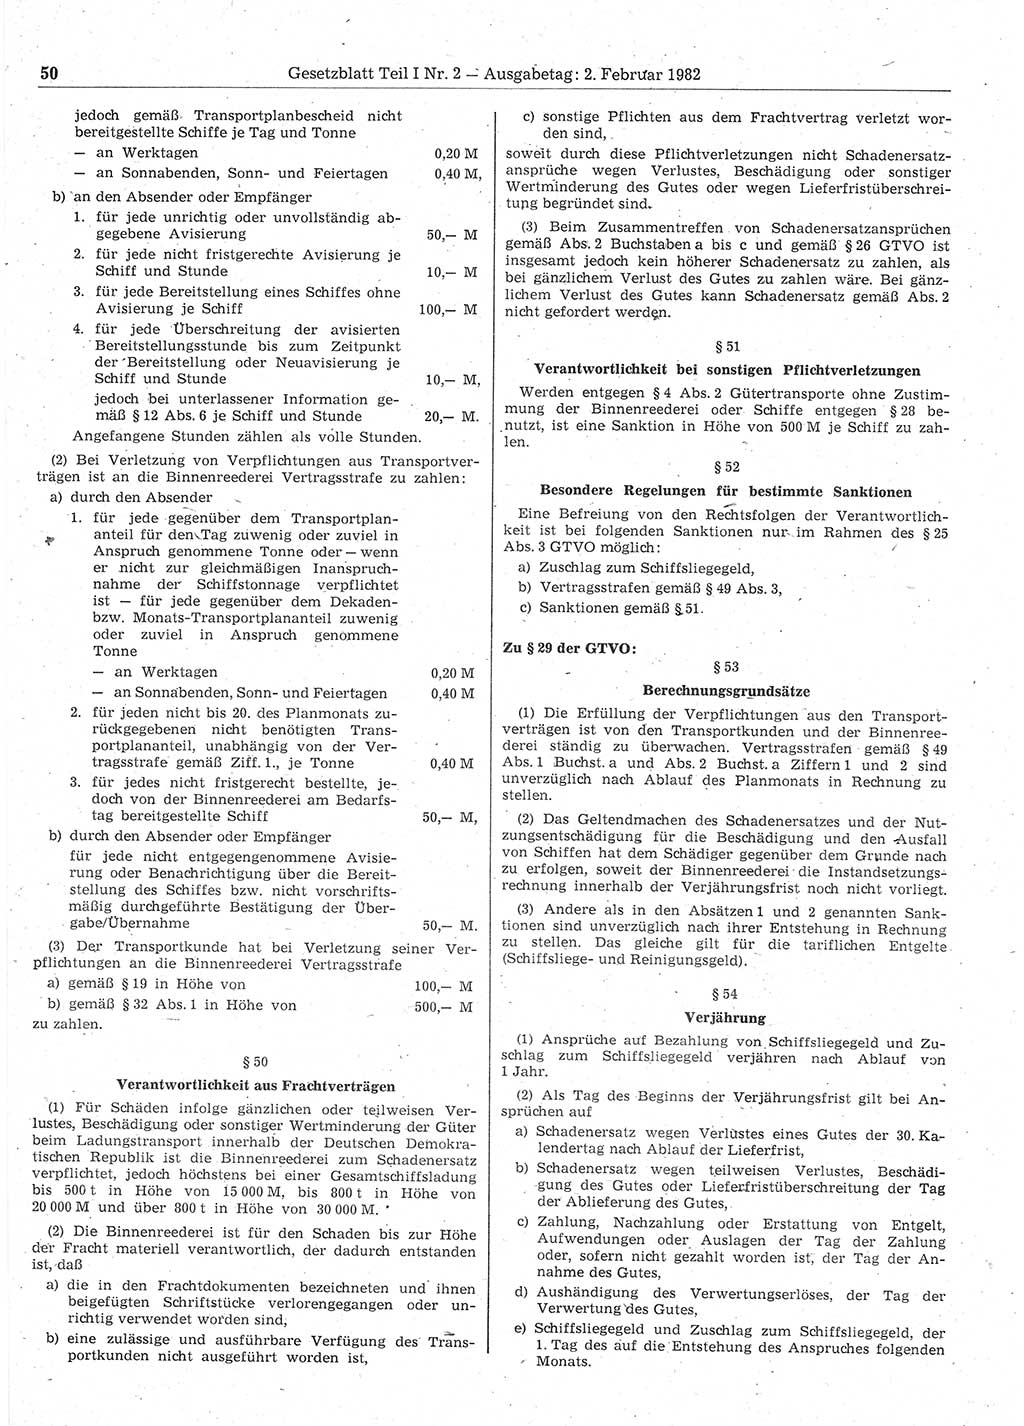 Gesetzblatt (GBl.) der Deutschen Demokratischen Republik (DDR) Teil Ⅰ 1982, Seite 50 (GBl. DDR Ⅰ 1982, S. 50)